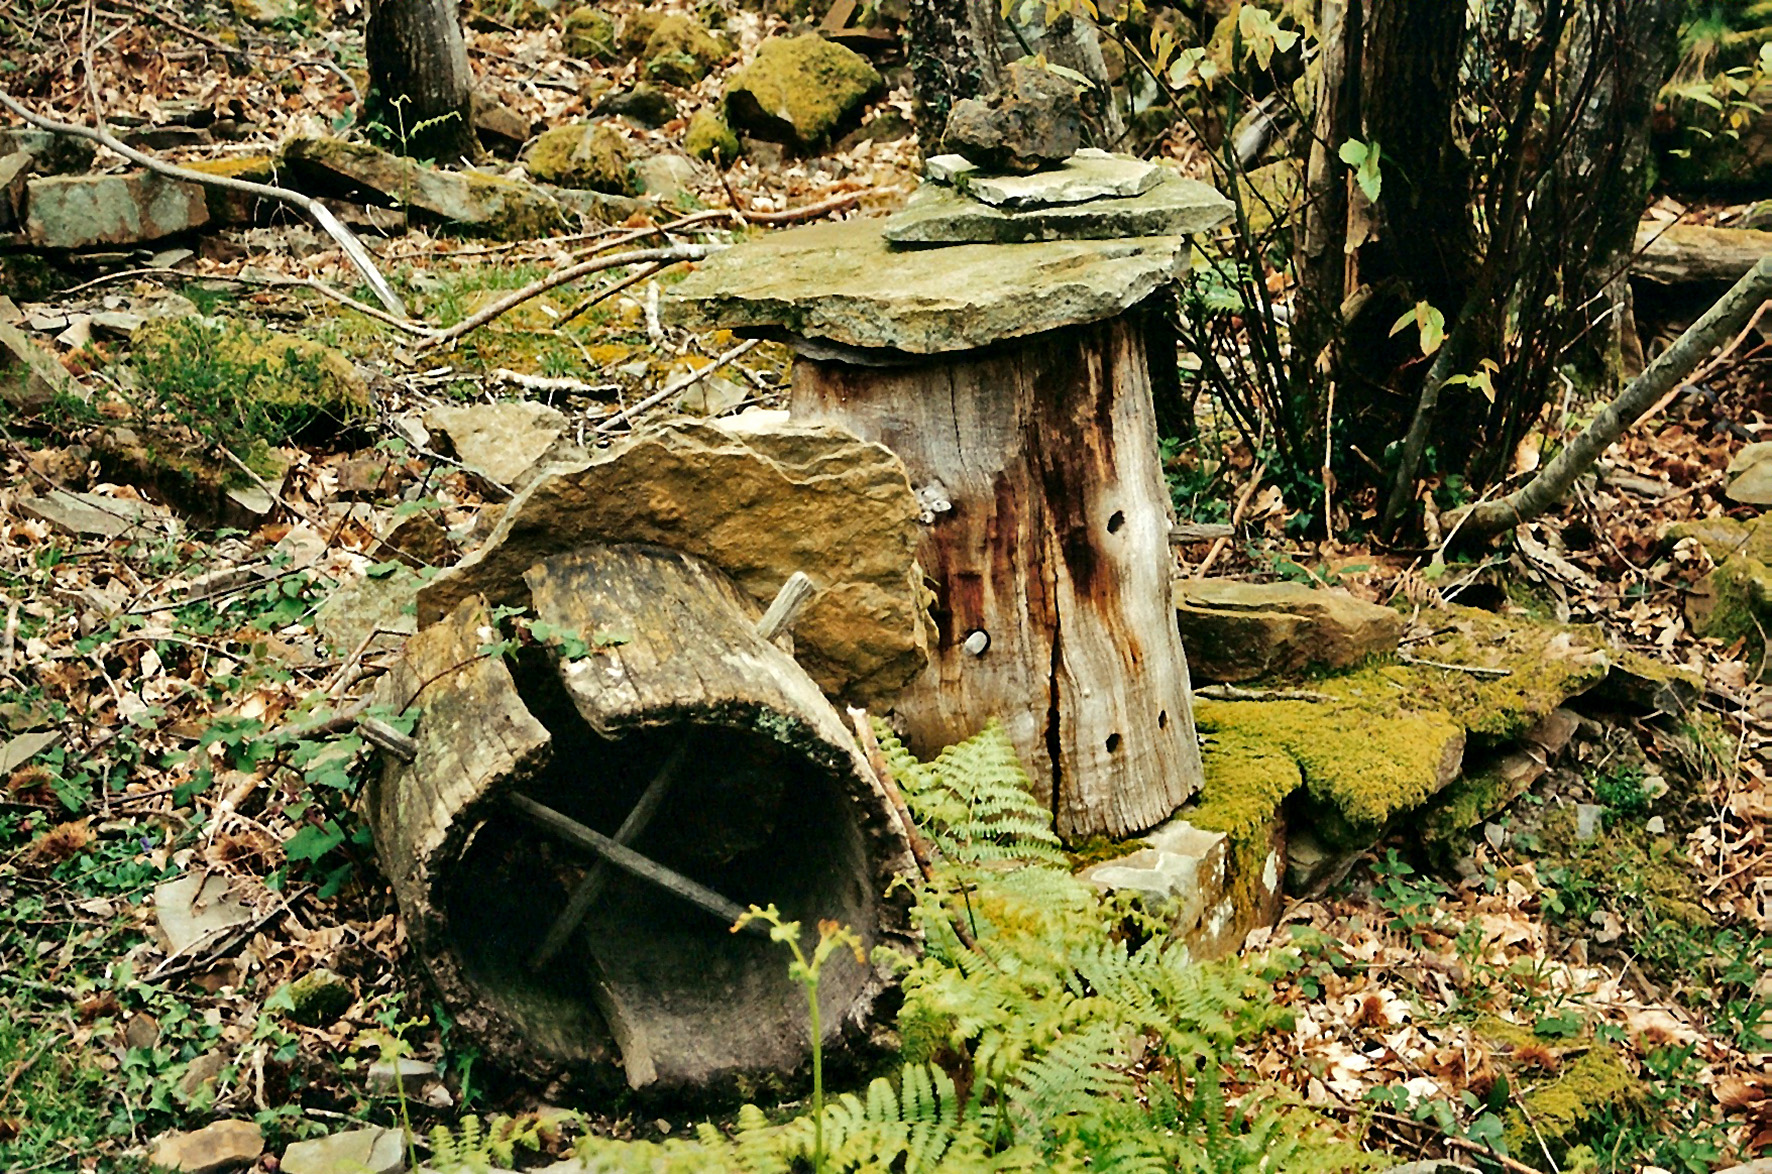 Old chestnut log hives. Miguel Sabino Díaz